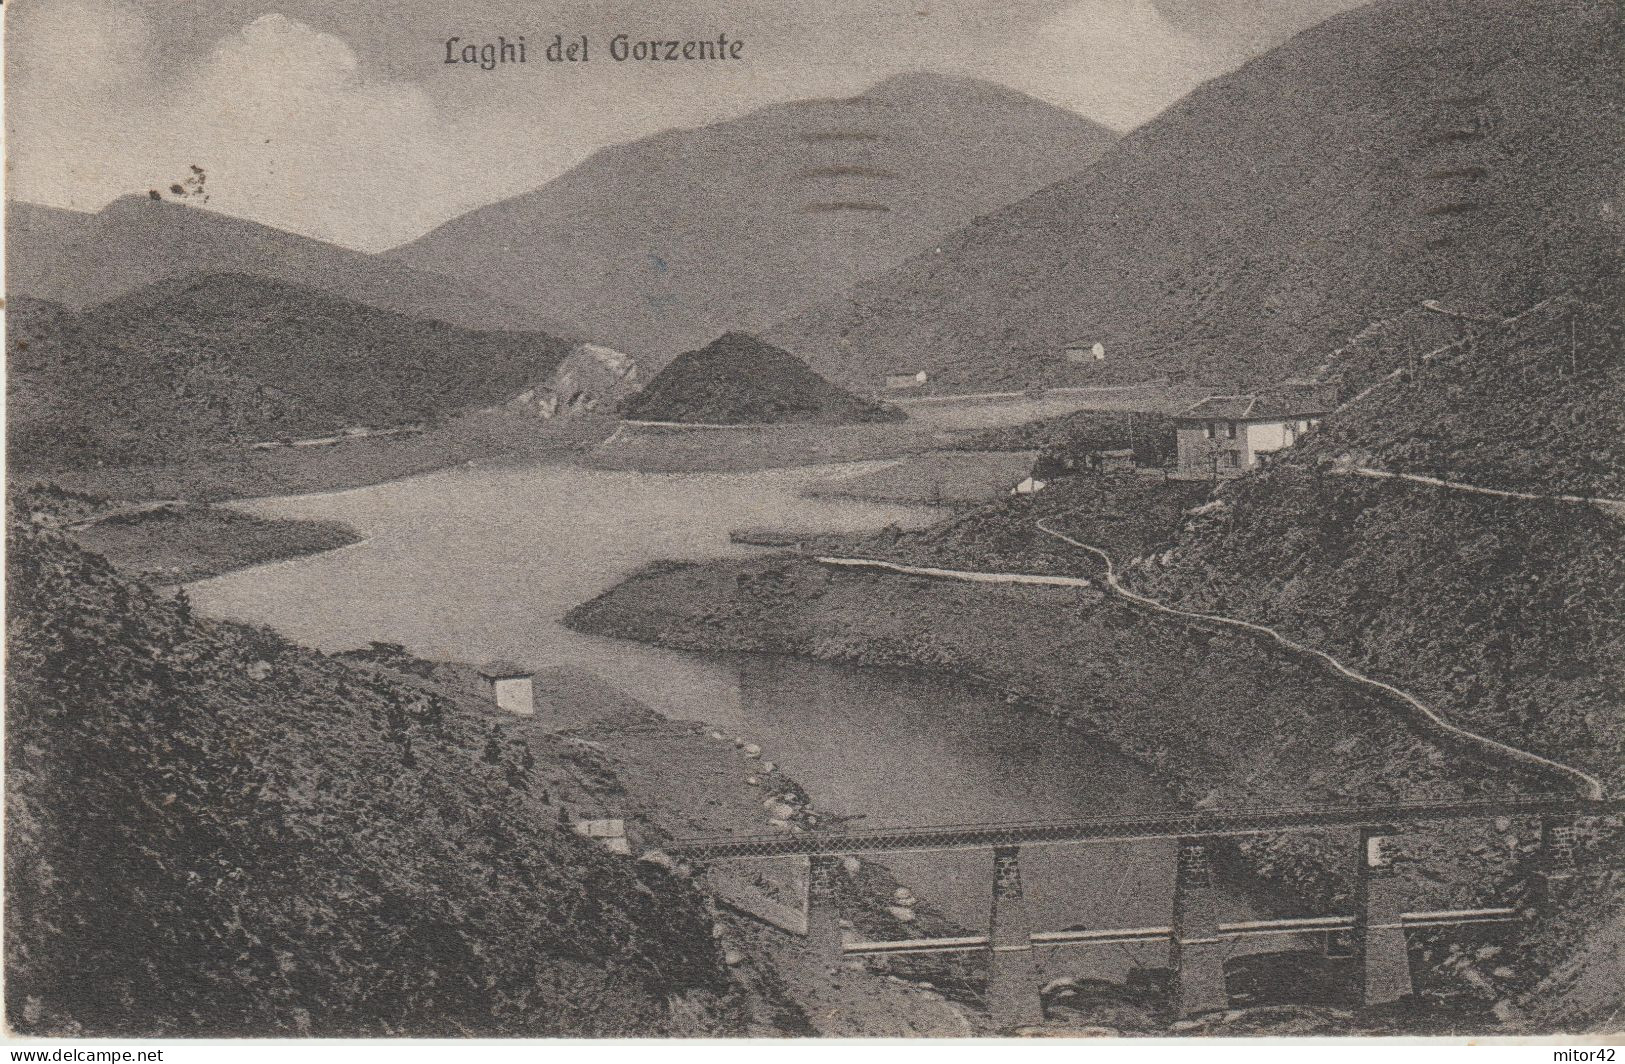 155-Laghi Del Gorzente-Bosio Campomorone Ceranesi-Genova-Alessandria-Liguria-Piemonte-v.1944 X Sarzana-La Spezia - Genova (Genoa)